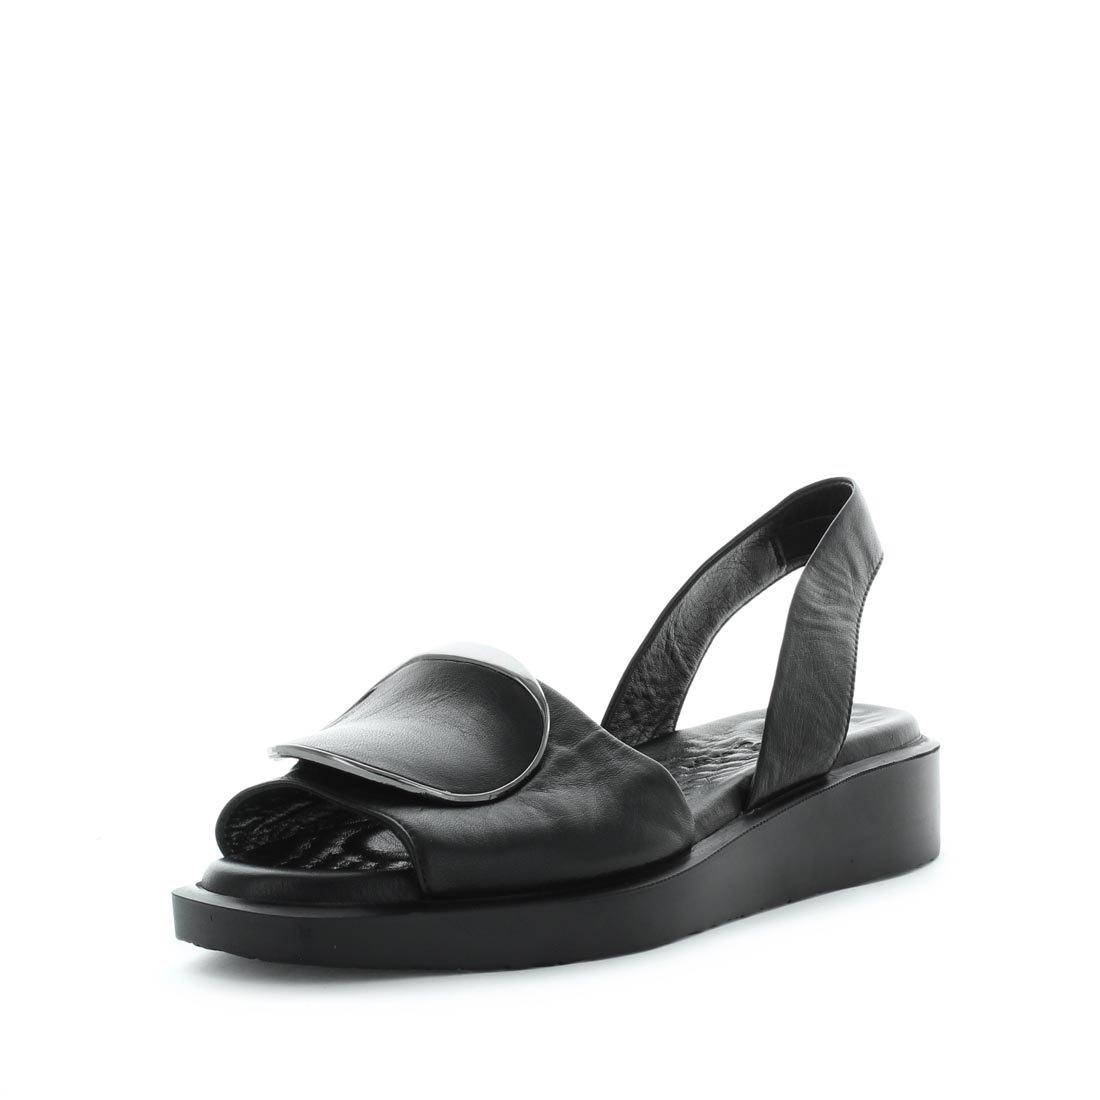 HAWN by ZOLA - iShoes - Women's Shoes, Women's Shoes: Sandals - FOOTWEAR-FOOTWEAR